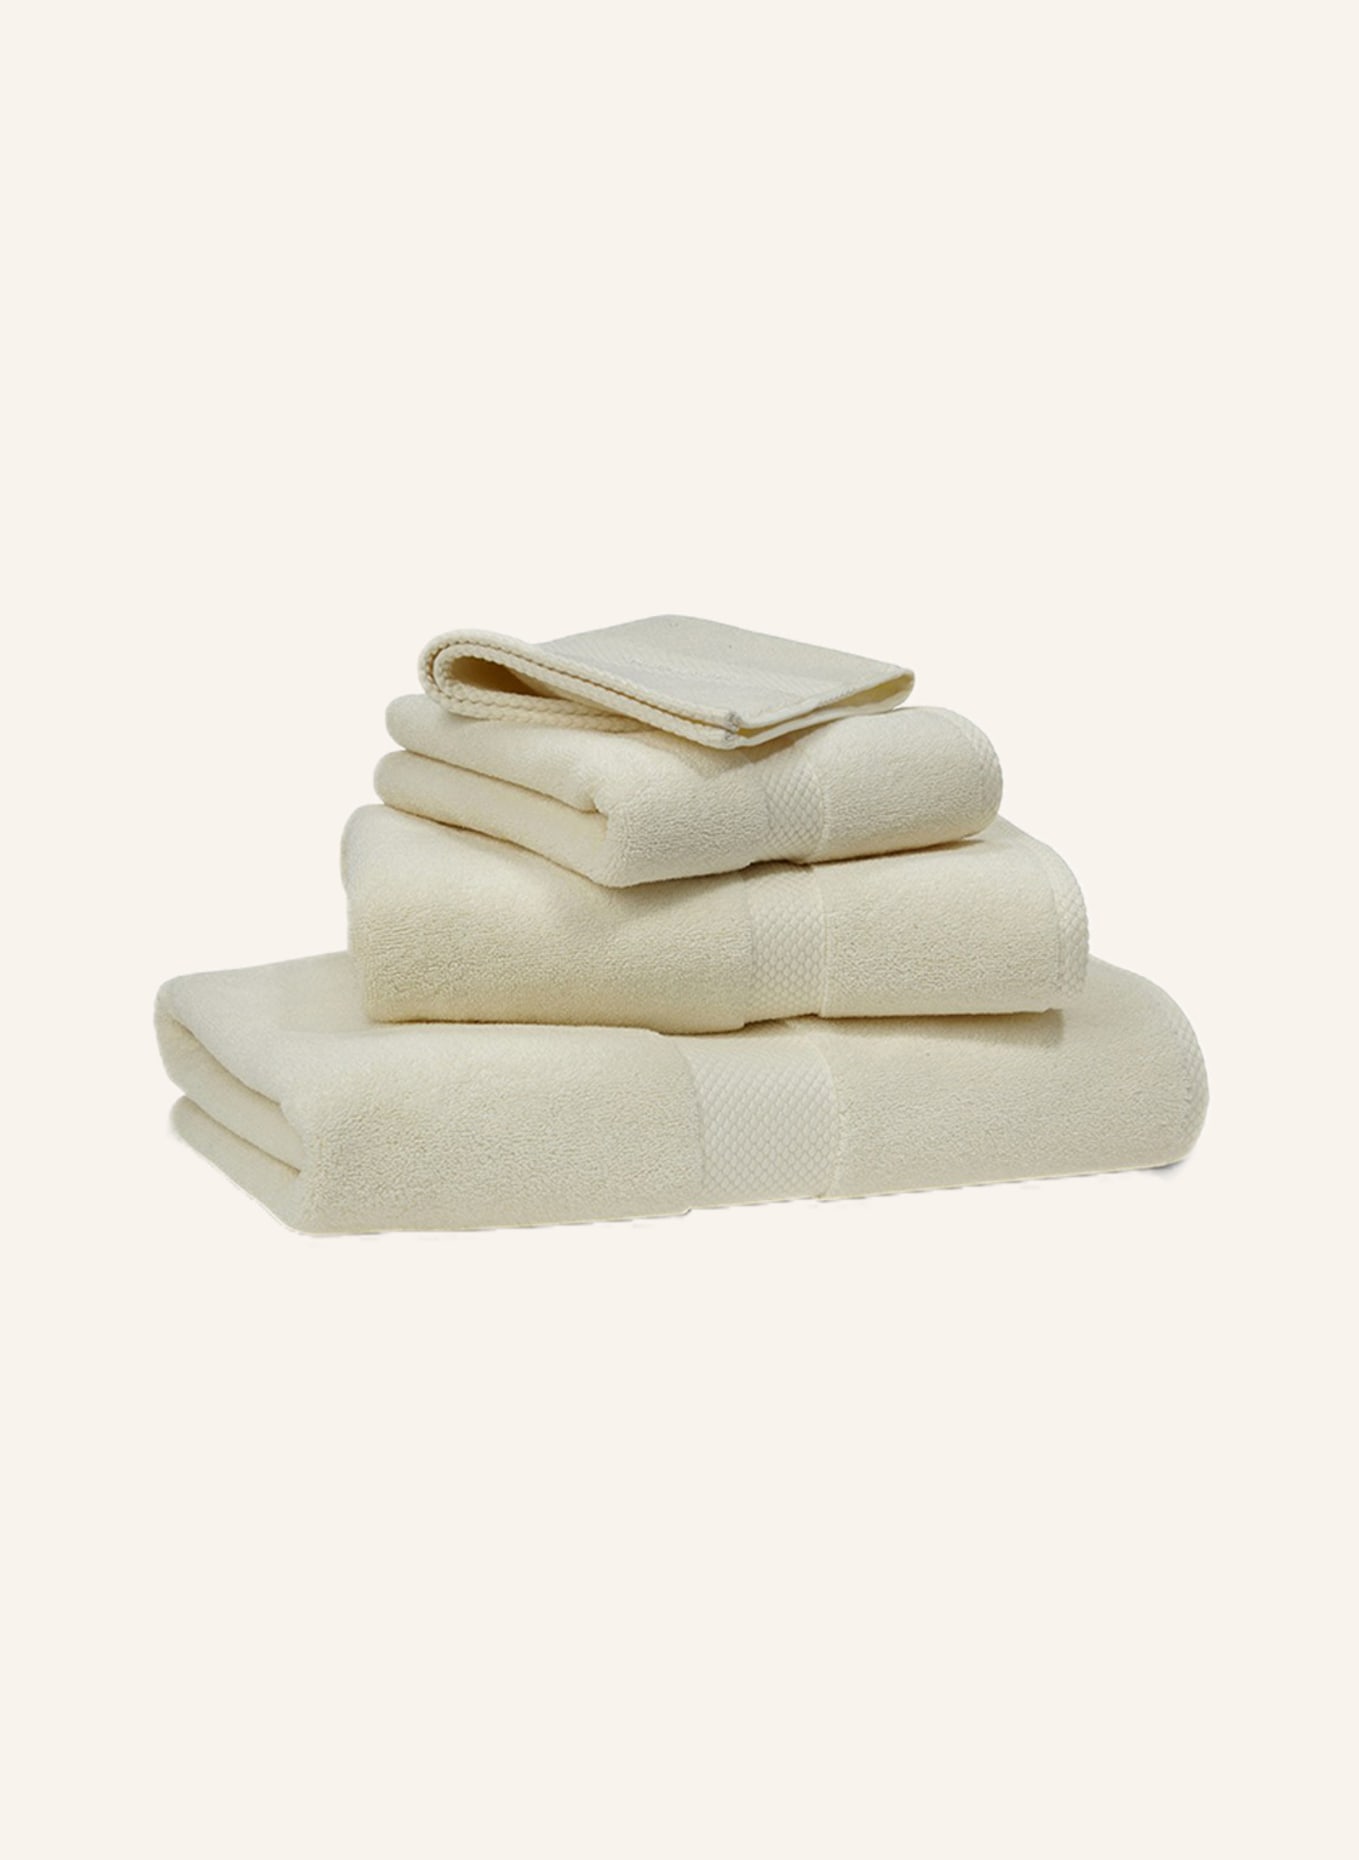 RALPH LAUREN HOME Handtuch AVENUE HANDTUCH, Farbe: BEIGE (Bild 1)